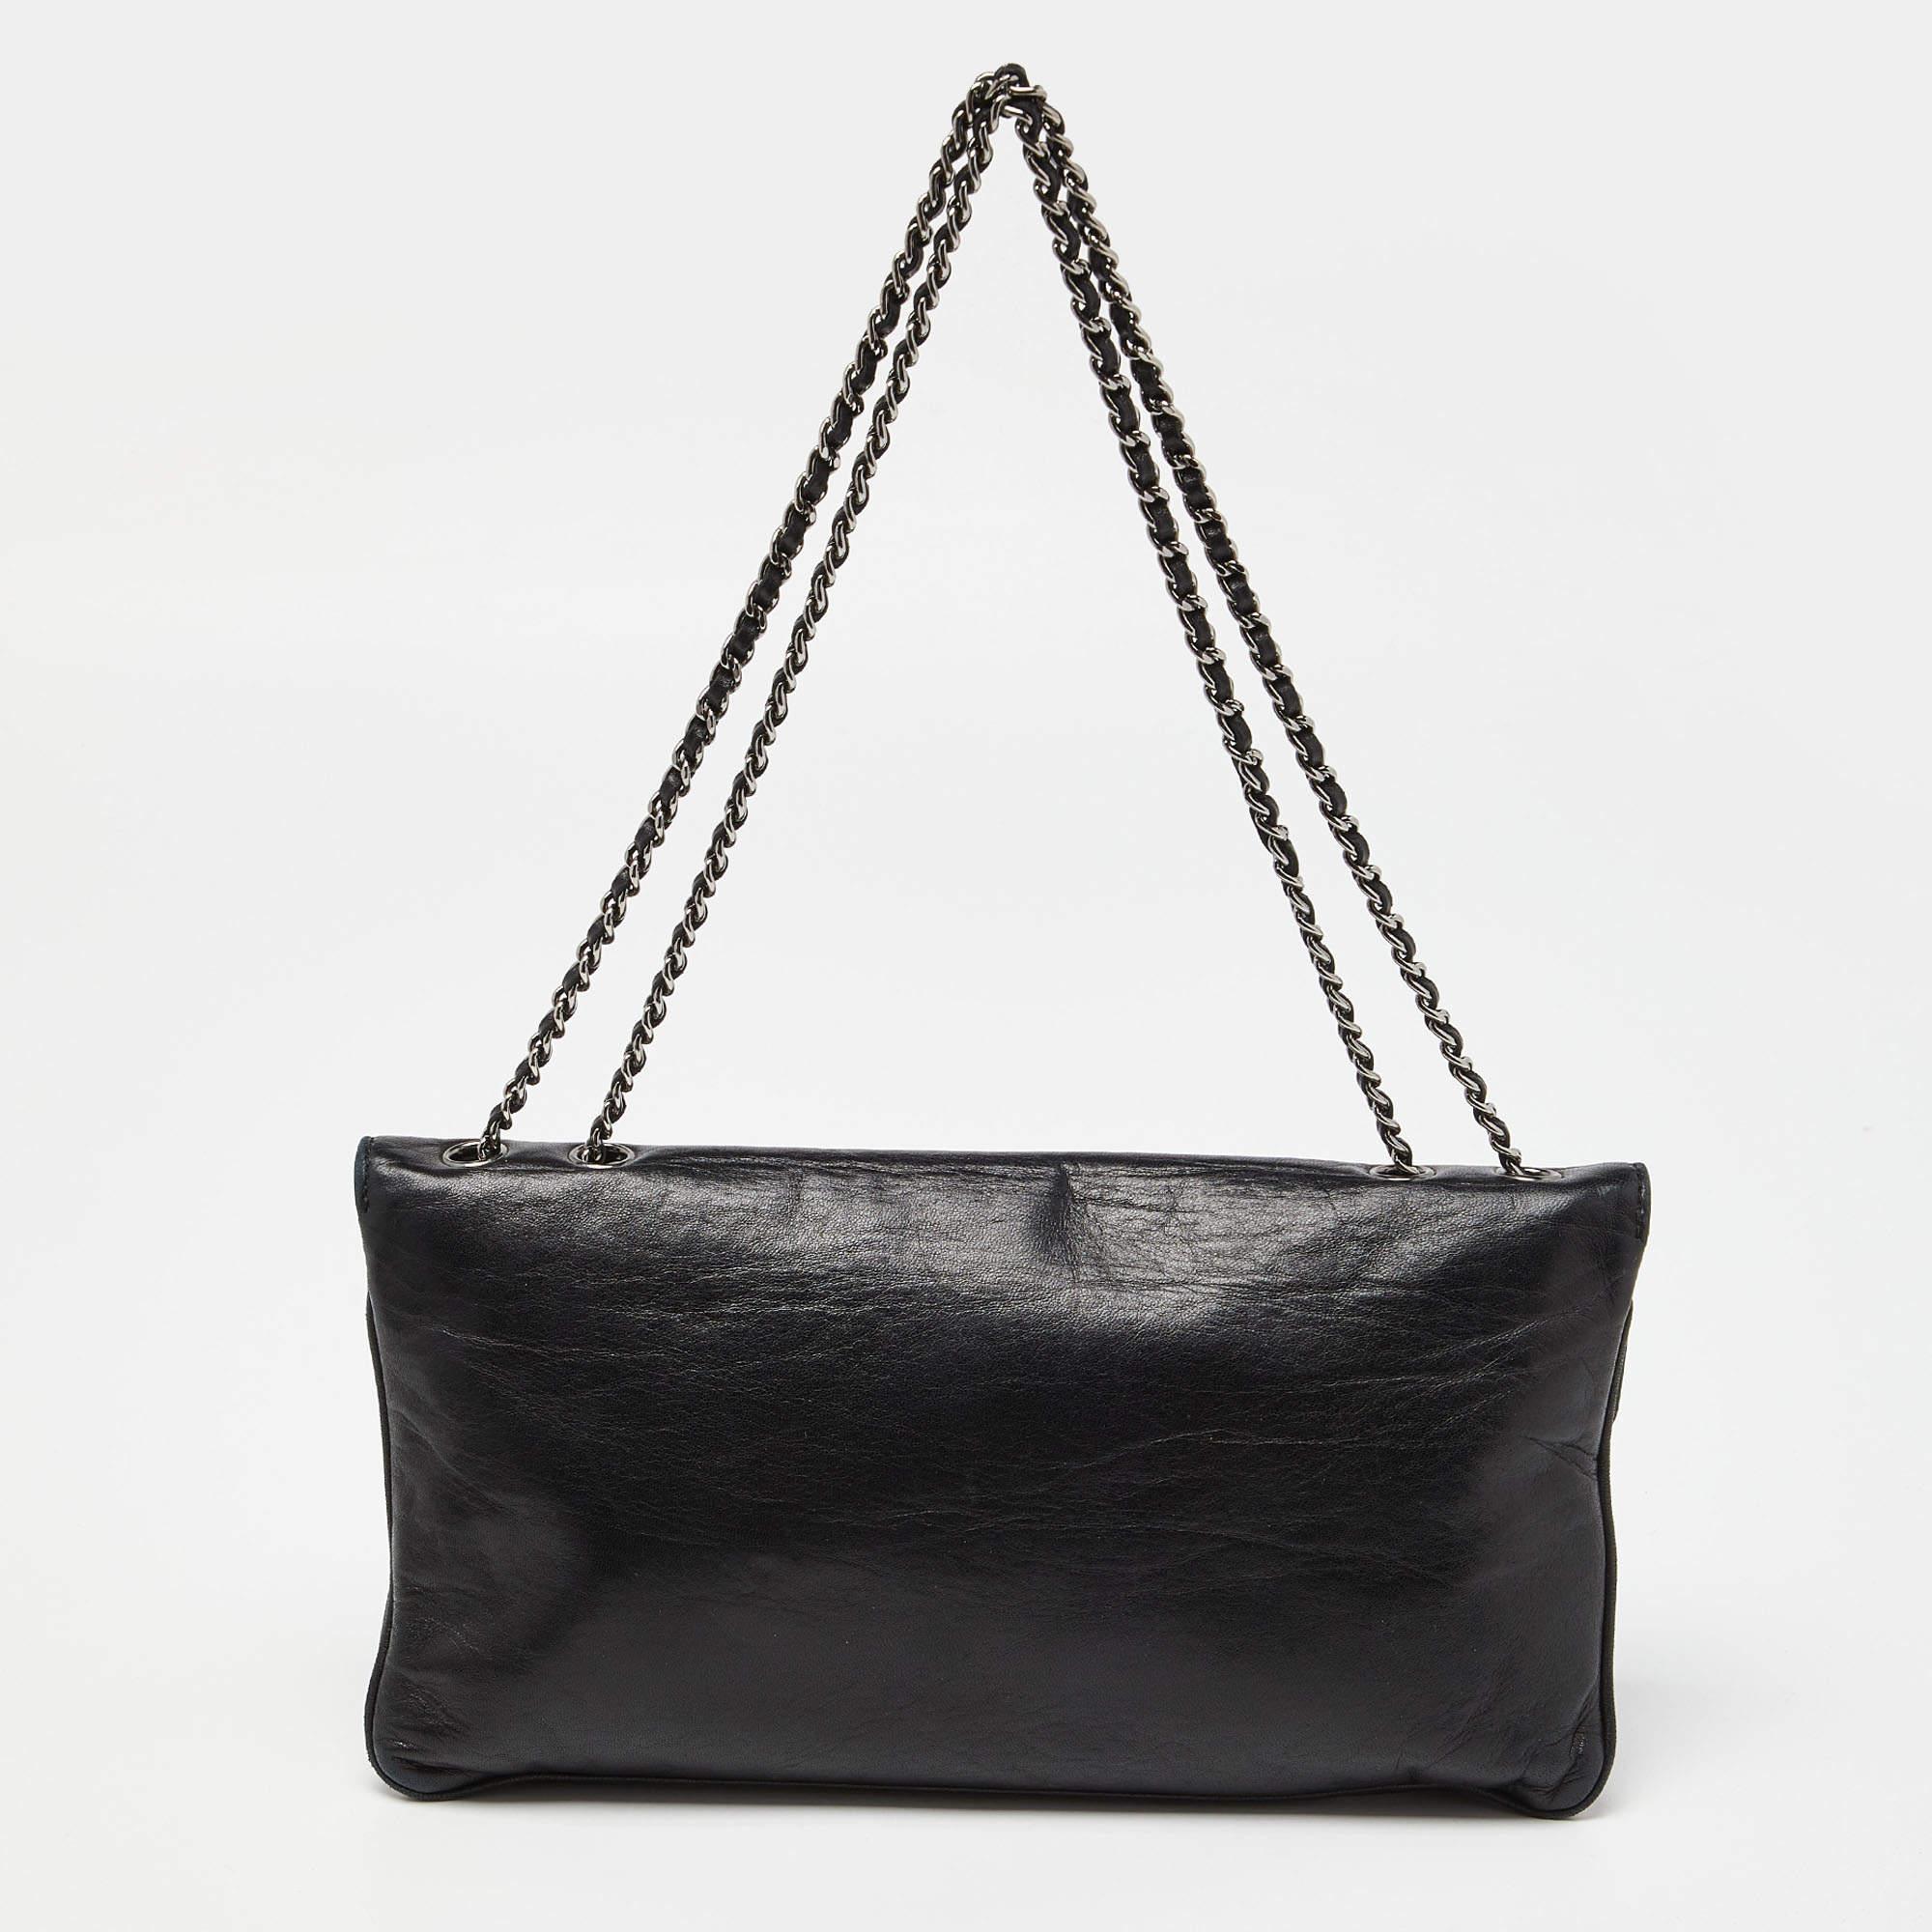 Die Chanel Reissue Flap Bag strahlt mit ihrem kultigen Design zeitlose Eleganz aus. Sie ist aus luxuriösem, gestepptem Leder gefertigt und verfügt über einen Überschlag mit dem charakteristischen Mademoiselle-Schloss. Die schlanke Silhouette und der